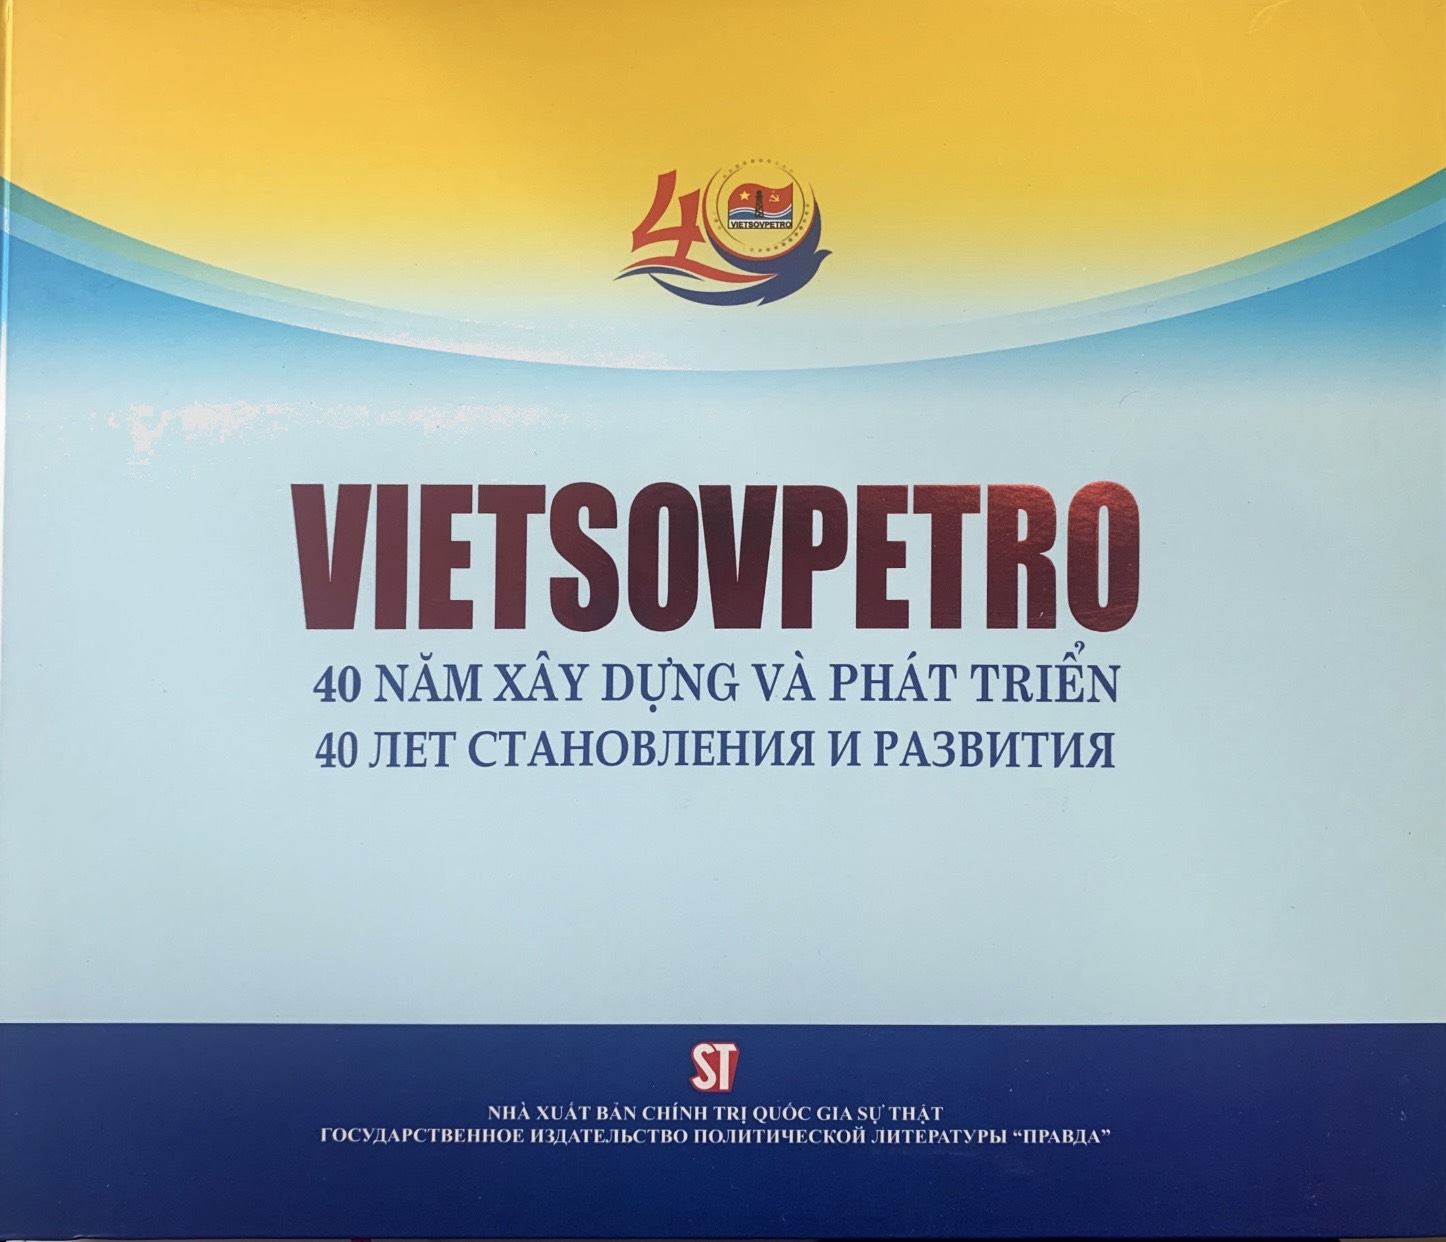 Vietsovpetro - 40 năm xây dựng và phát triển